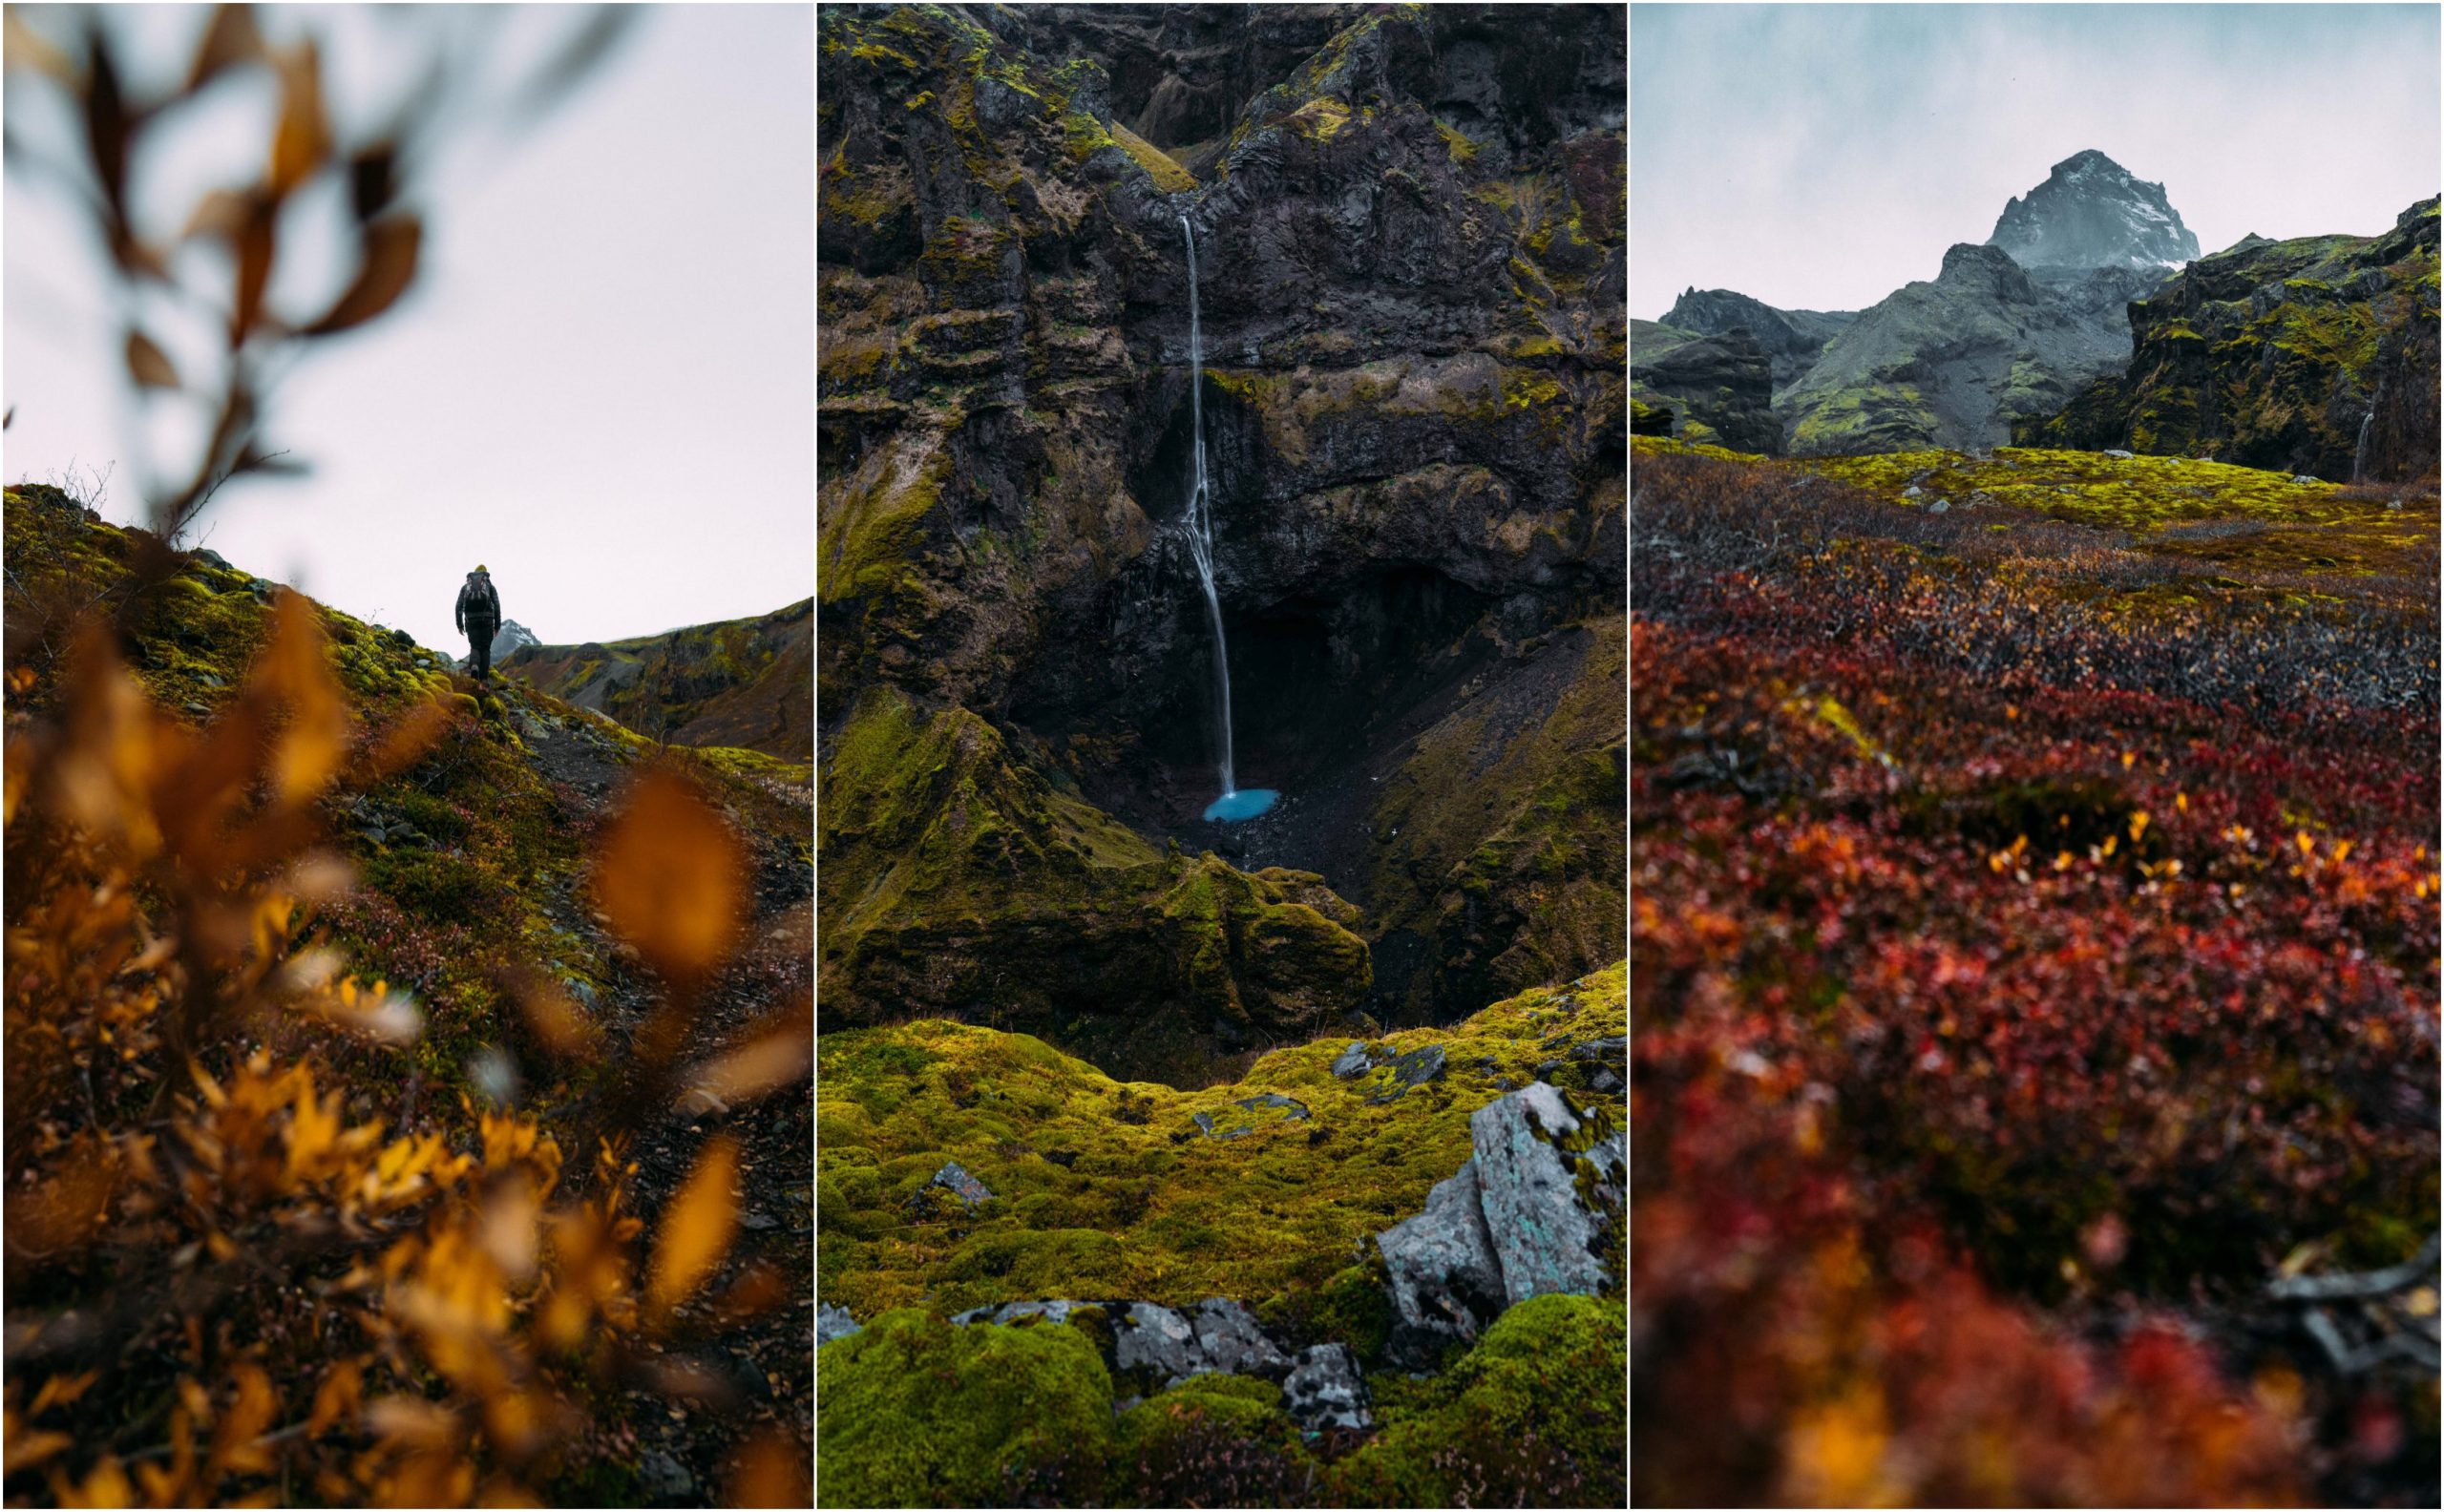 Múlagljúfur Iceland landscapes